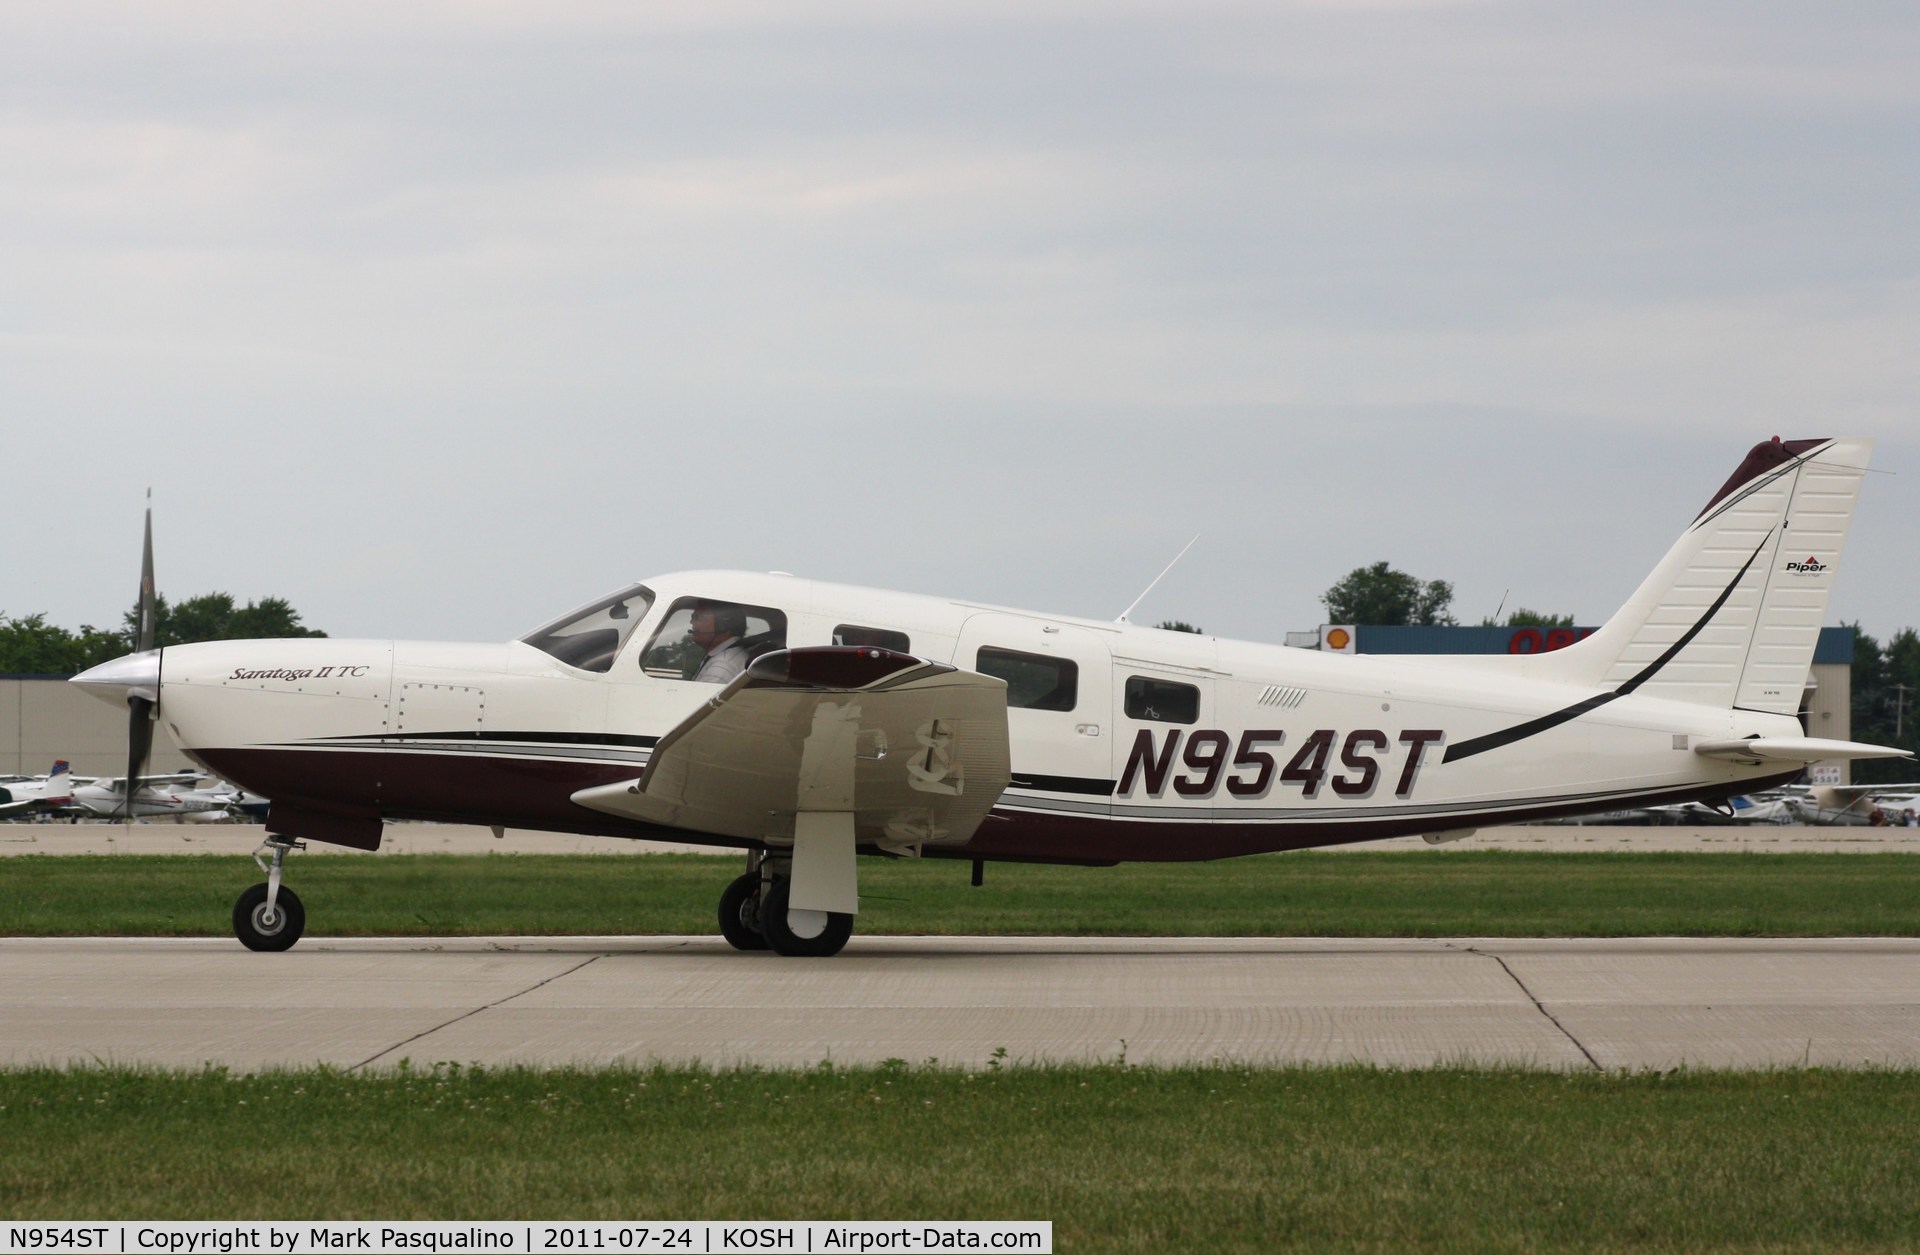 N954ST, 2007 Piper PA-32R-301T Turbo Saratoga C/N 3257455, Piper PA-32R-301T